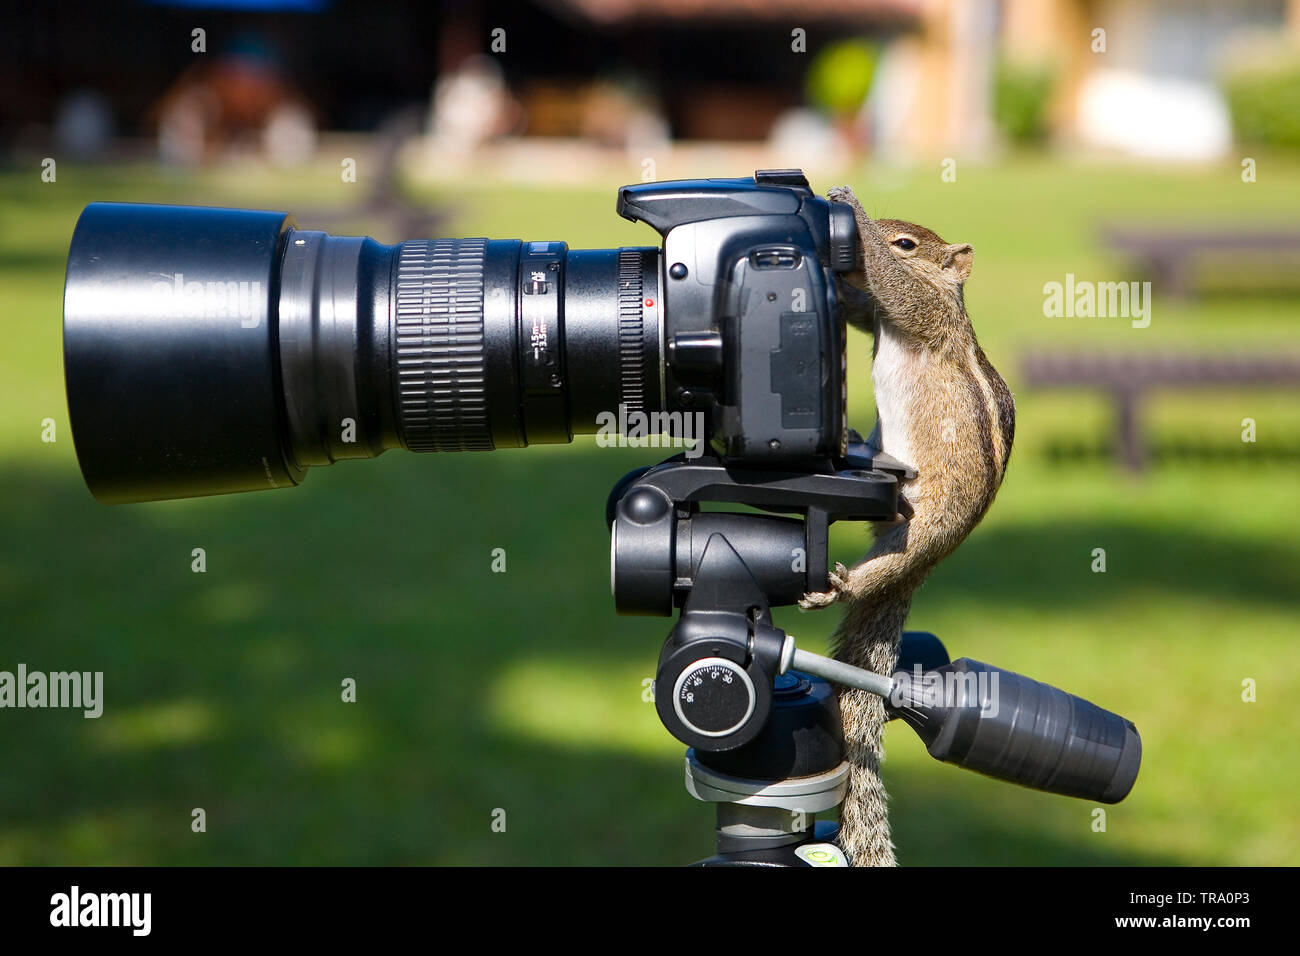 Palm squirrel als Fotograf bei der Sucher der Kamera. Tieren und Humor. Stockfoto